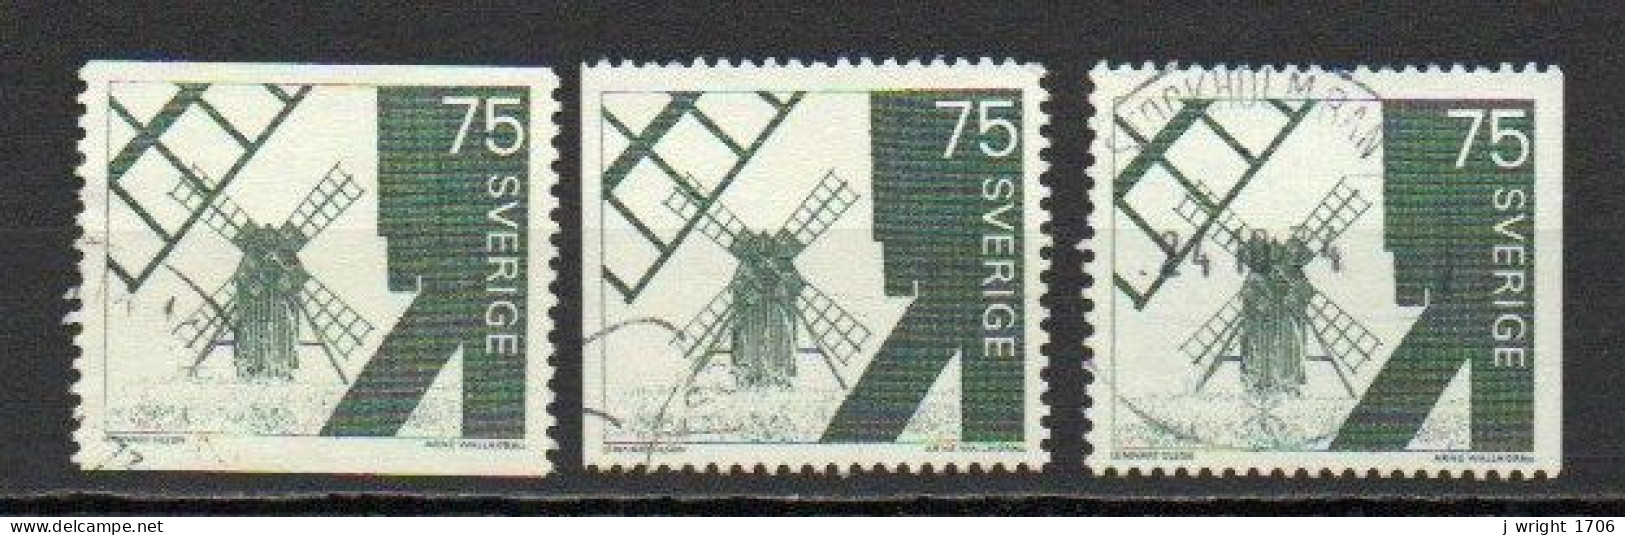 Sweden, 1971, Windmill Ölana Island, 75ö, USED - Oblitérés